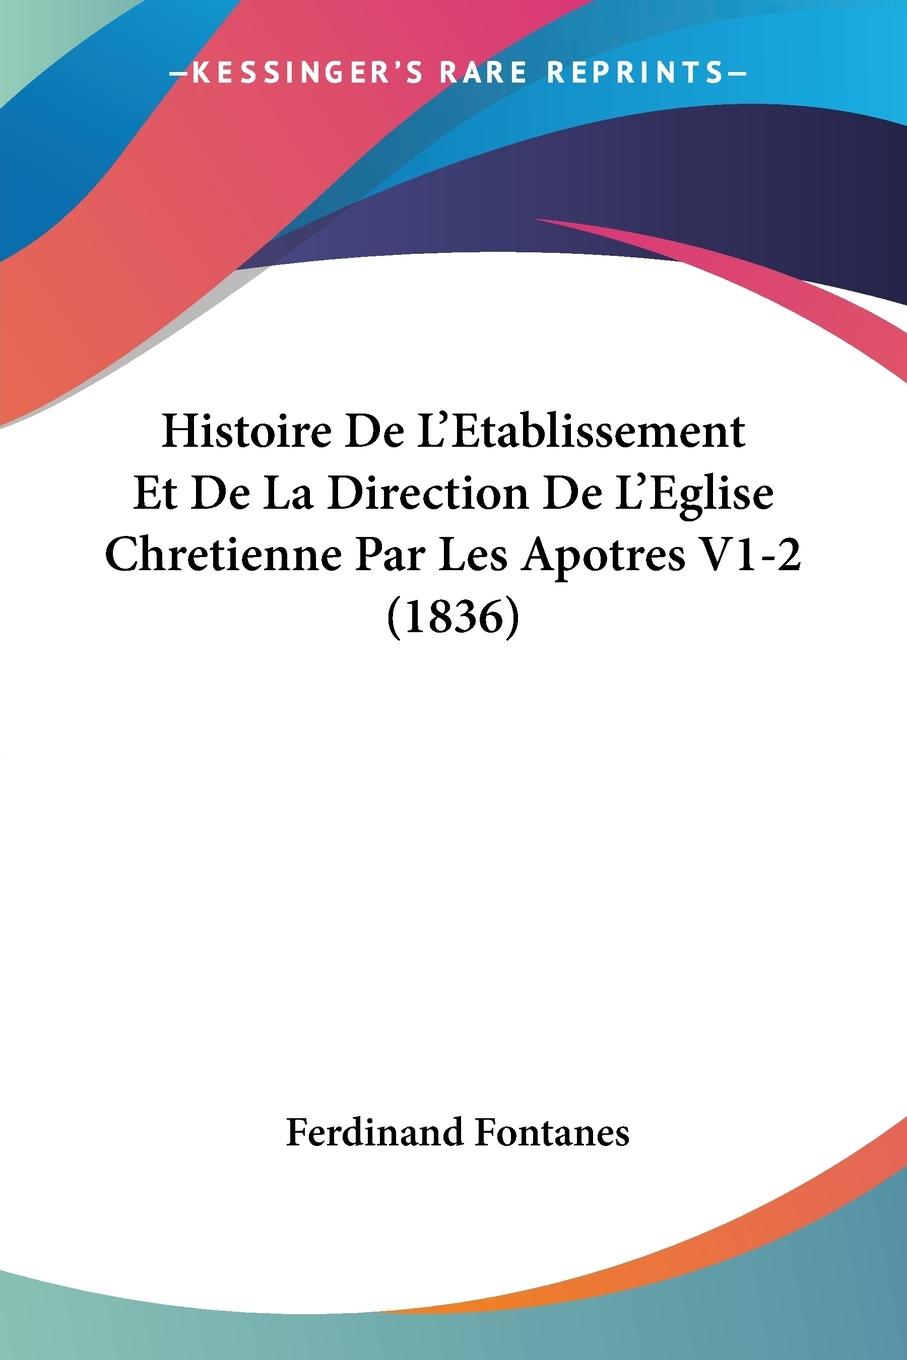 Histoire De L Etablissement Et De La Direction De L Eglise Chretienne Par Les Apotres V1-2 (1836) - Fontanes, Ferdinand